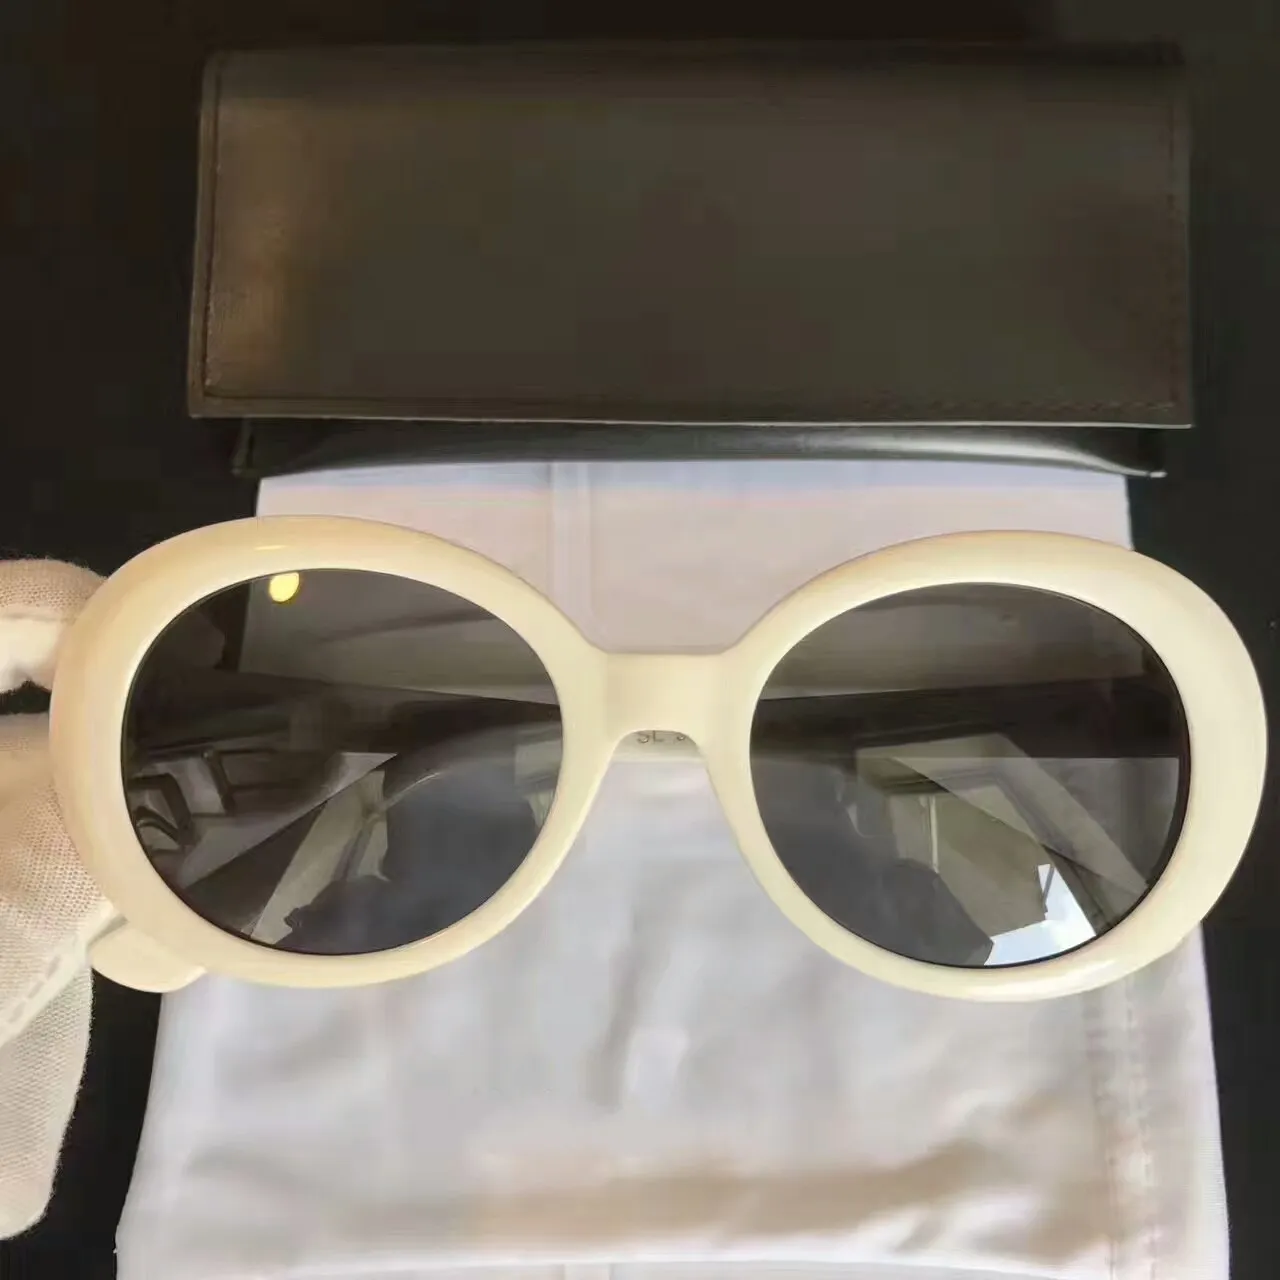 New top quality SL98 mens sunglasses men sun glasses women sunglasses fashion style protects eyes Gafas de sol lunettes de soleil with box